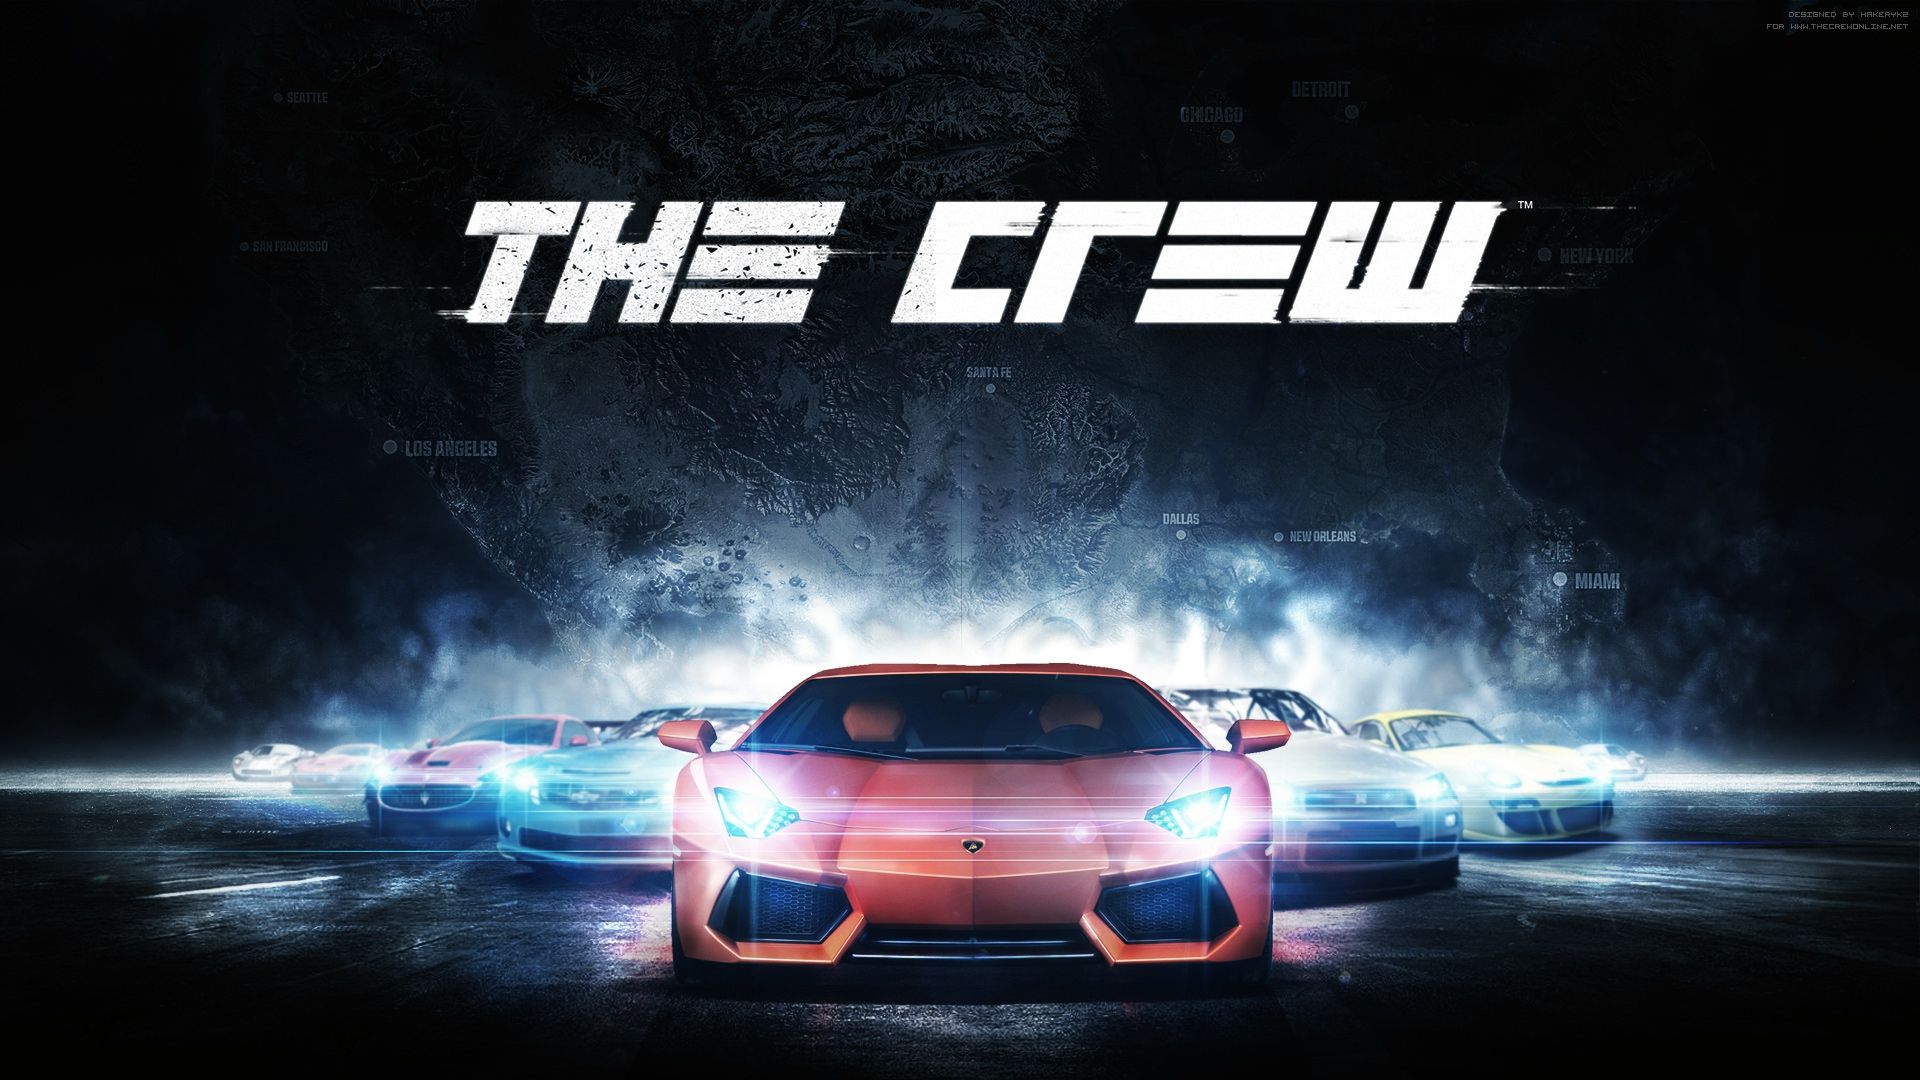 The Crew è il prossimo gioco regalato per i 30 di Ubisoft